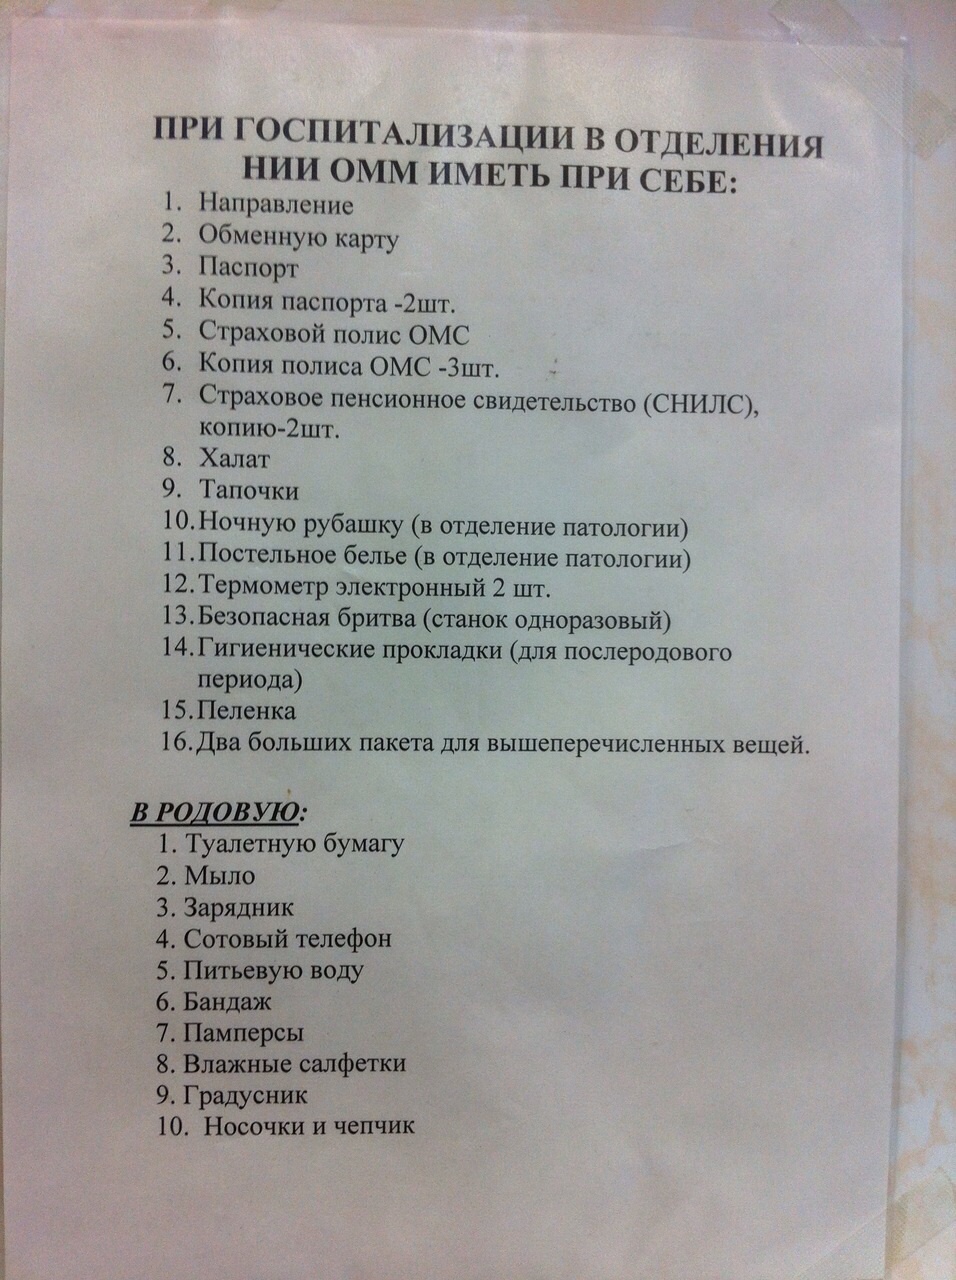 Список вещей на госпитализацию в больницу